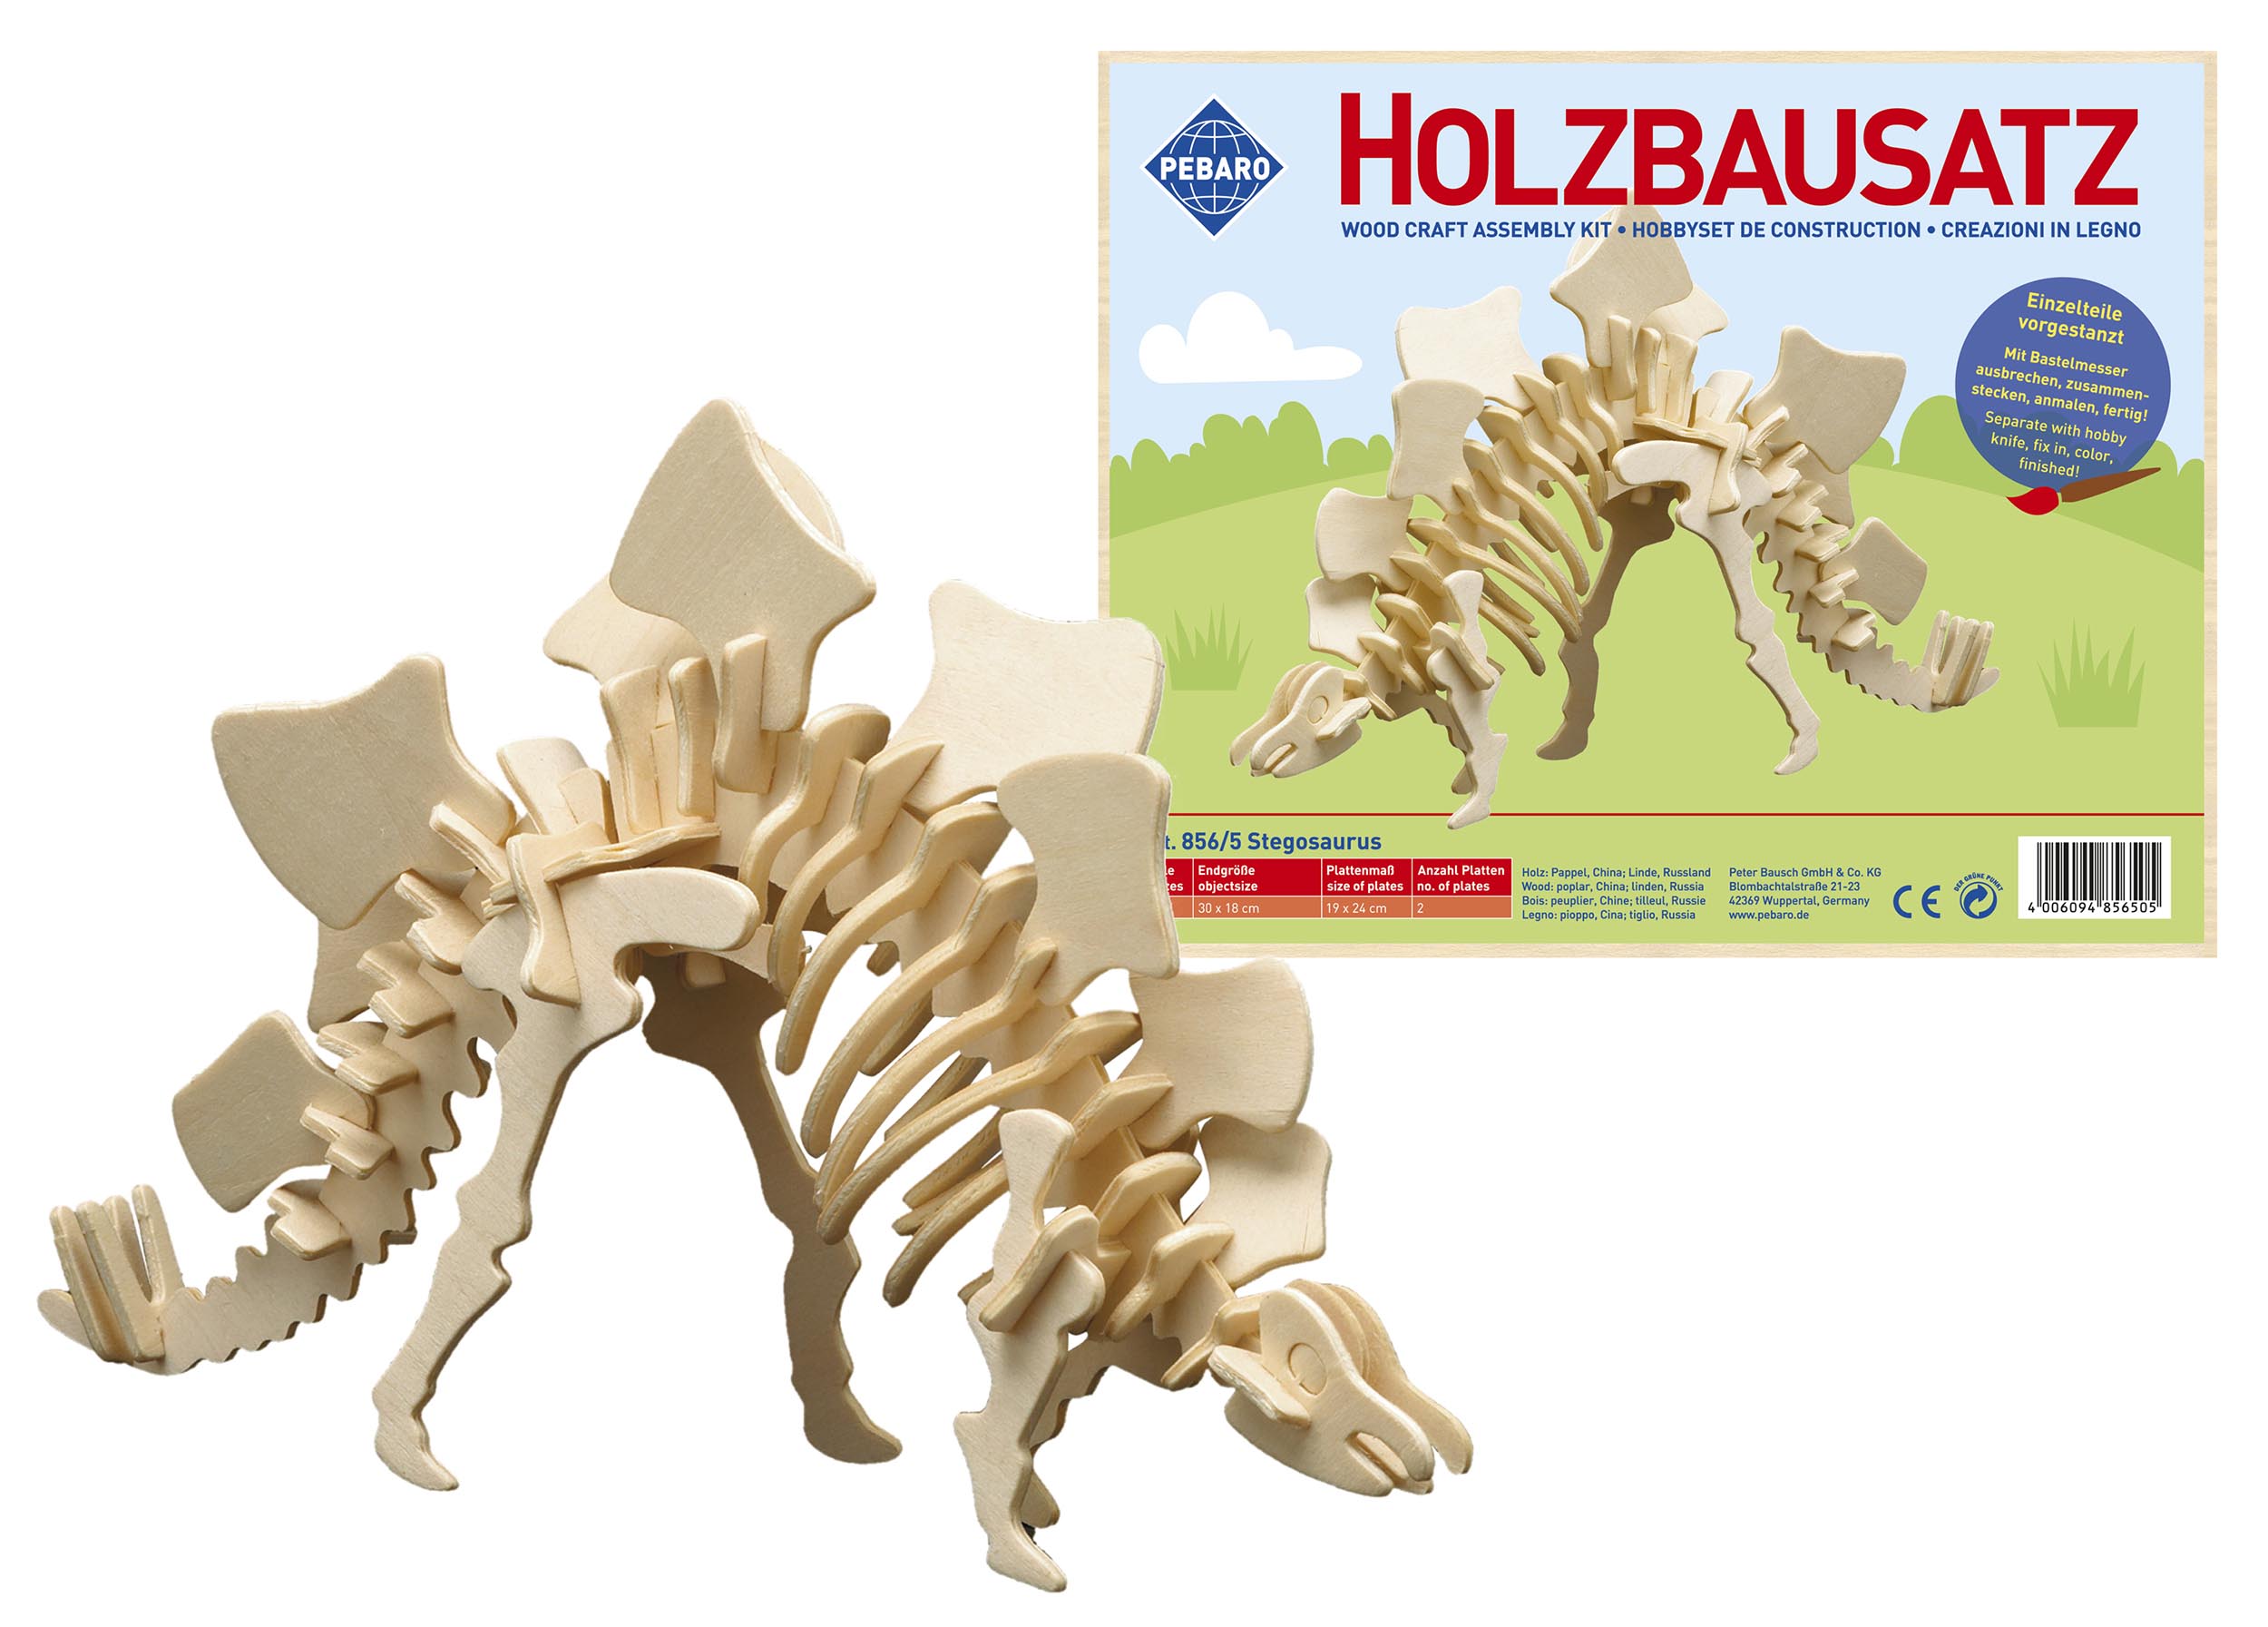 Pebaro Holzbausatz Stegosaurus.